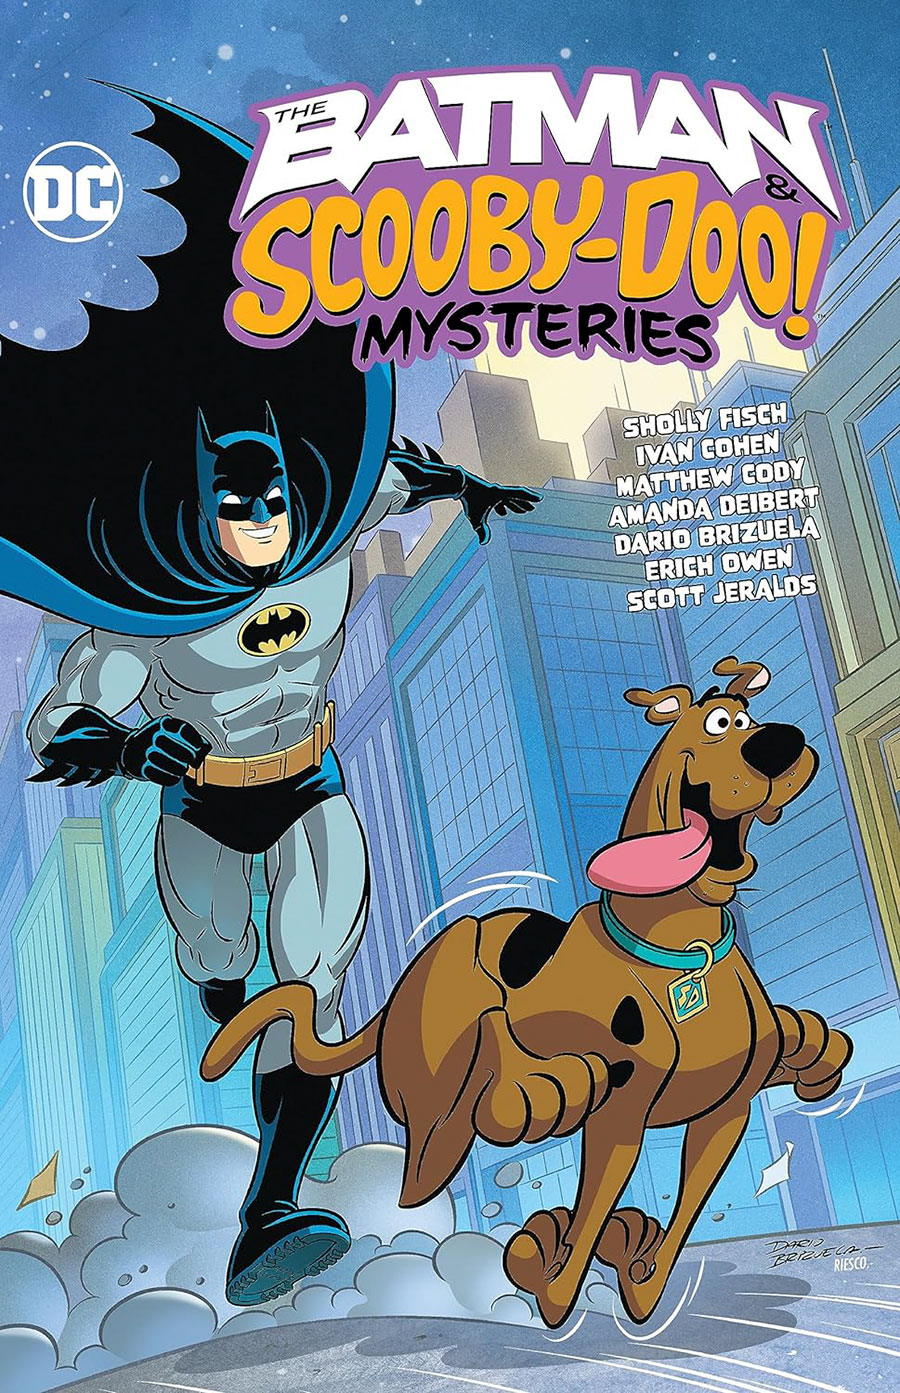 Batman & Scooby-Doo Mysteries Vol 3 TP